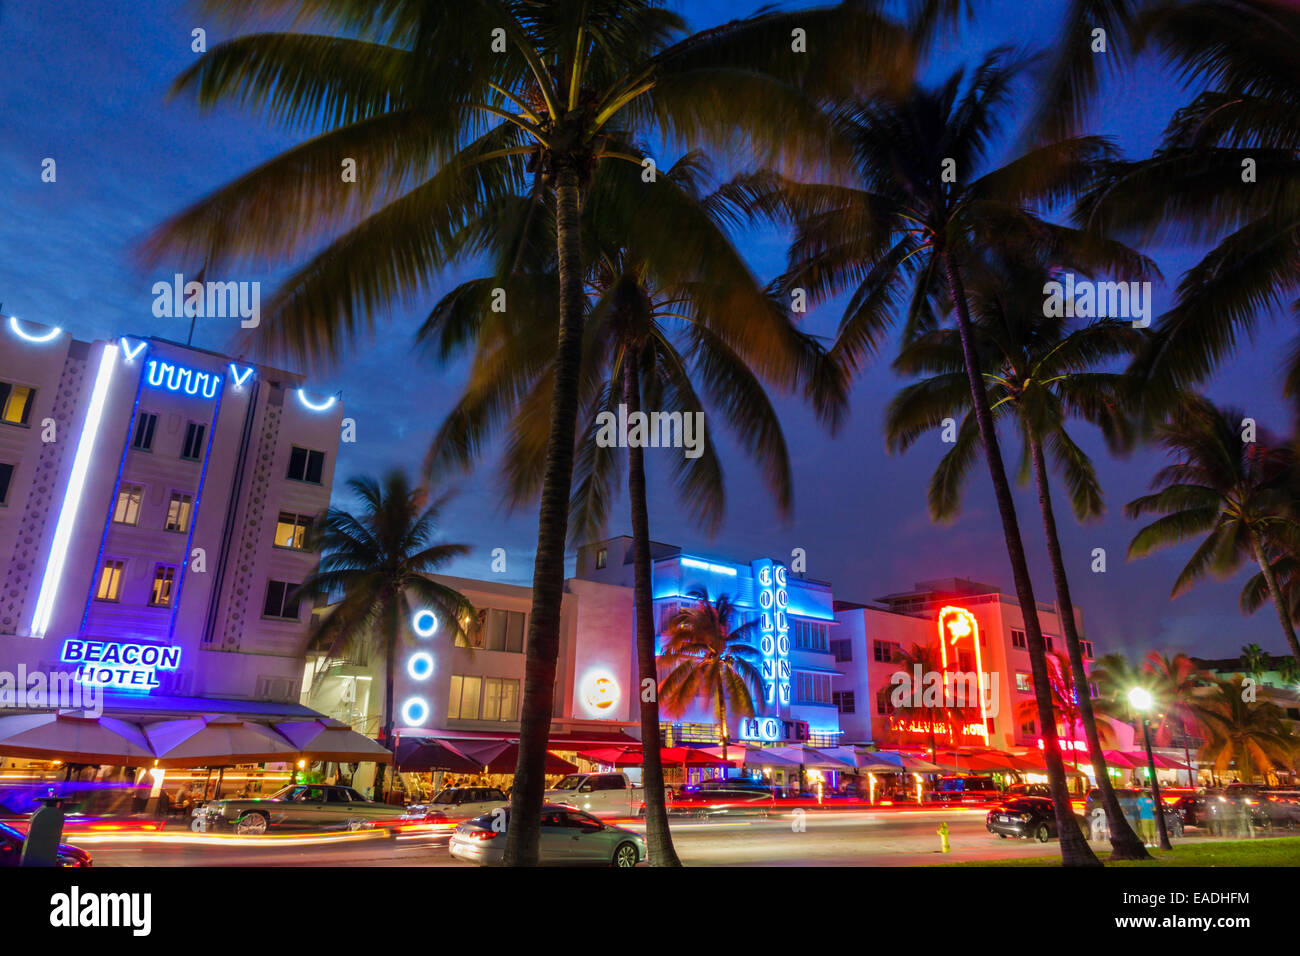 Miami Beach Florida,Ocean Drive,crépuscule,soirée,nuit,palmiers,Beacon,Colony,hôtel,bâtiments,néon,circulation,FL140930013 Banque D'Images